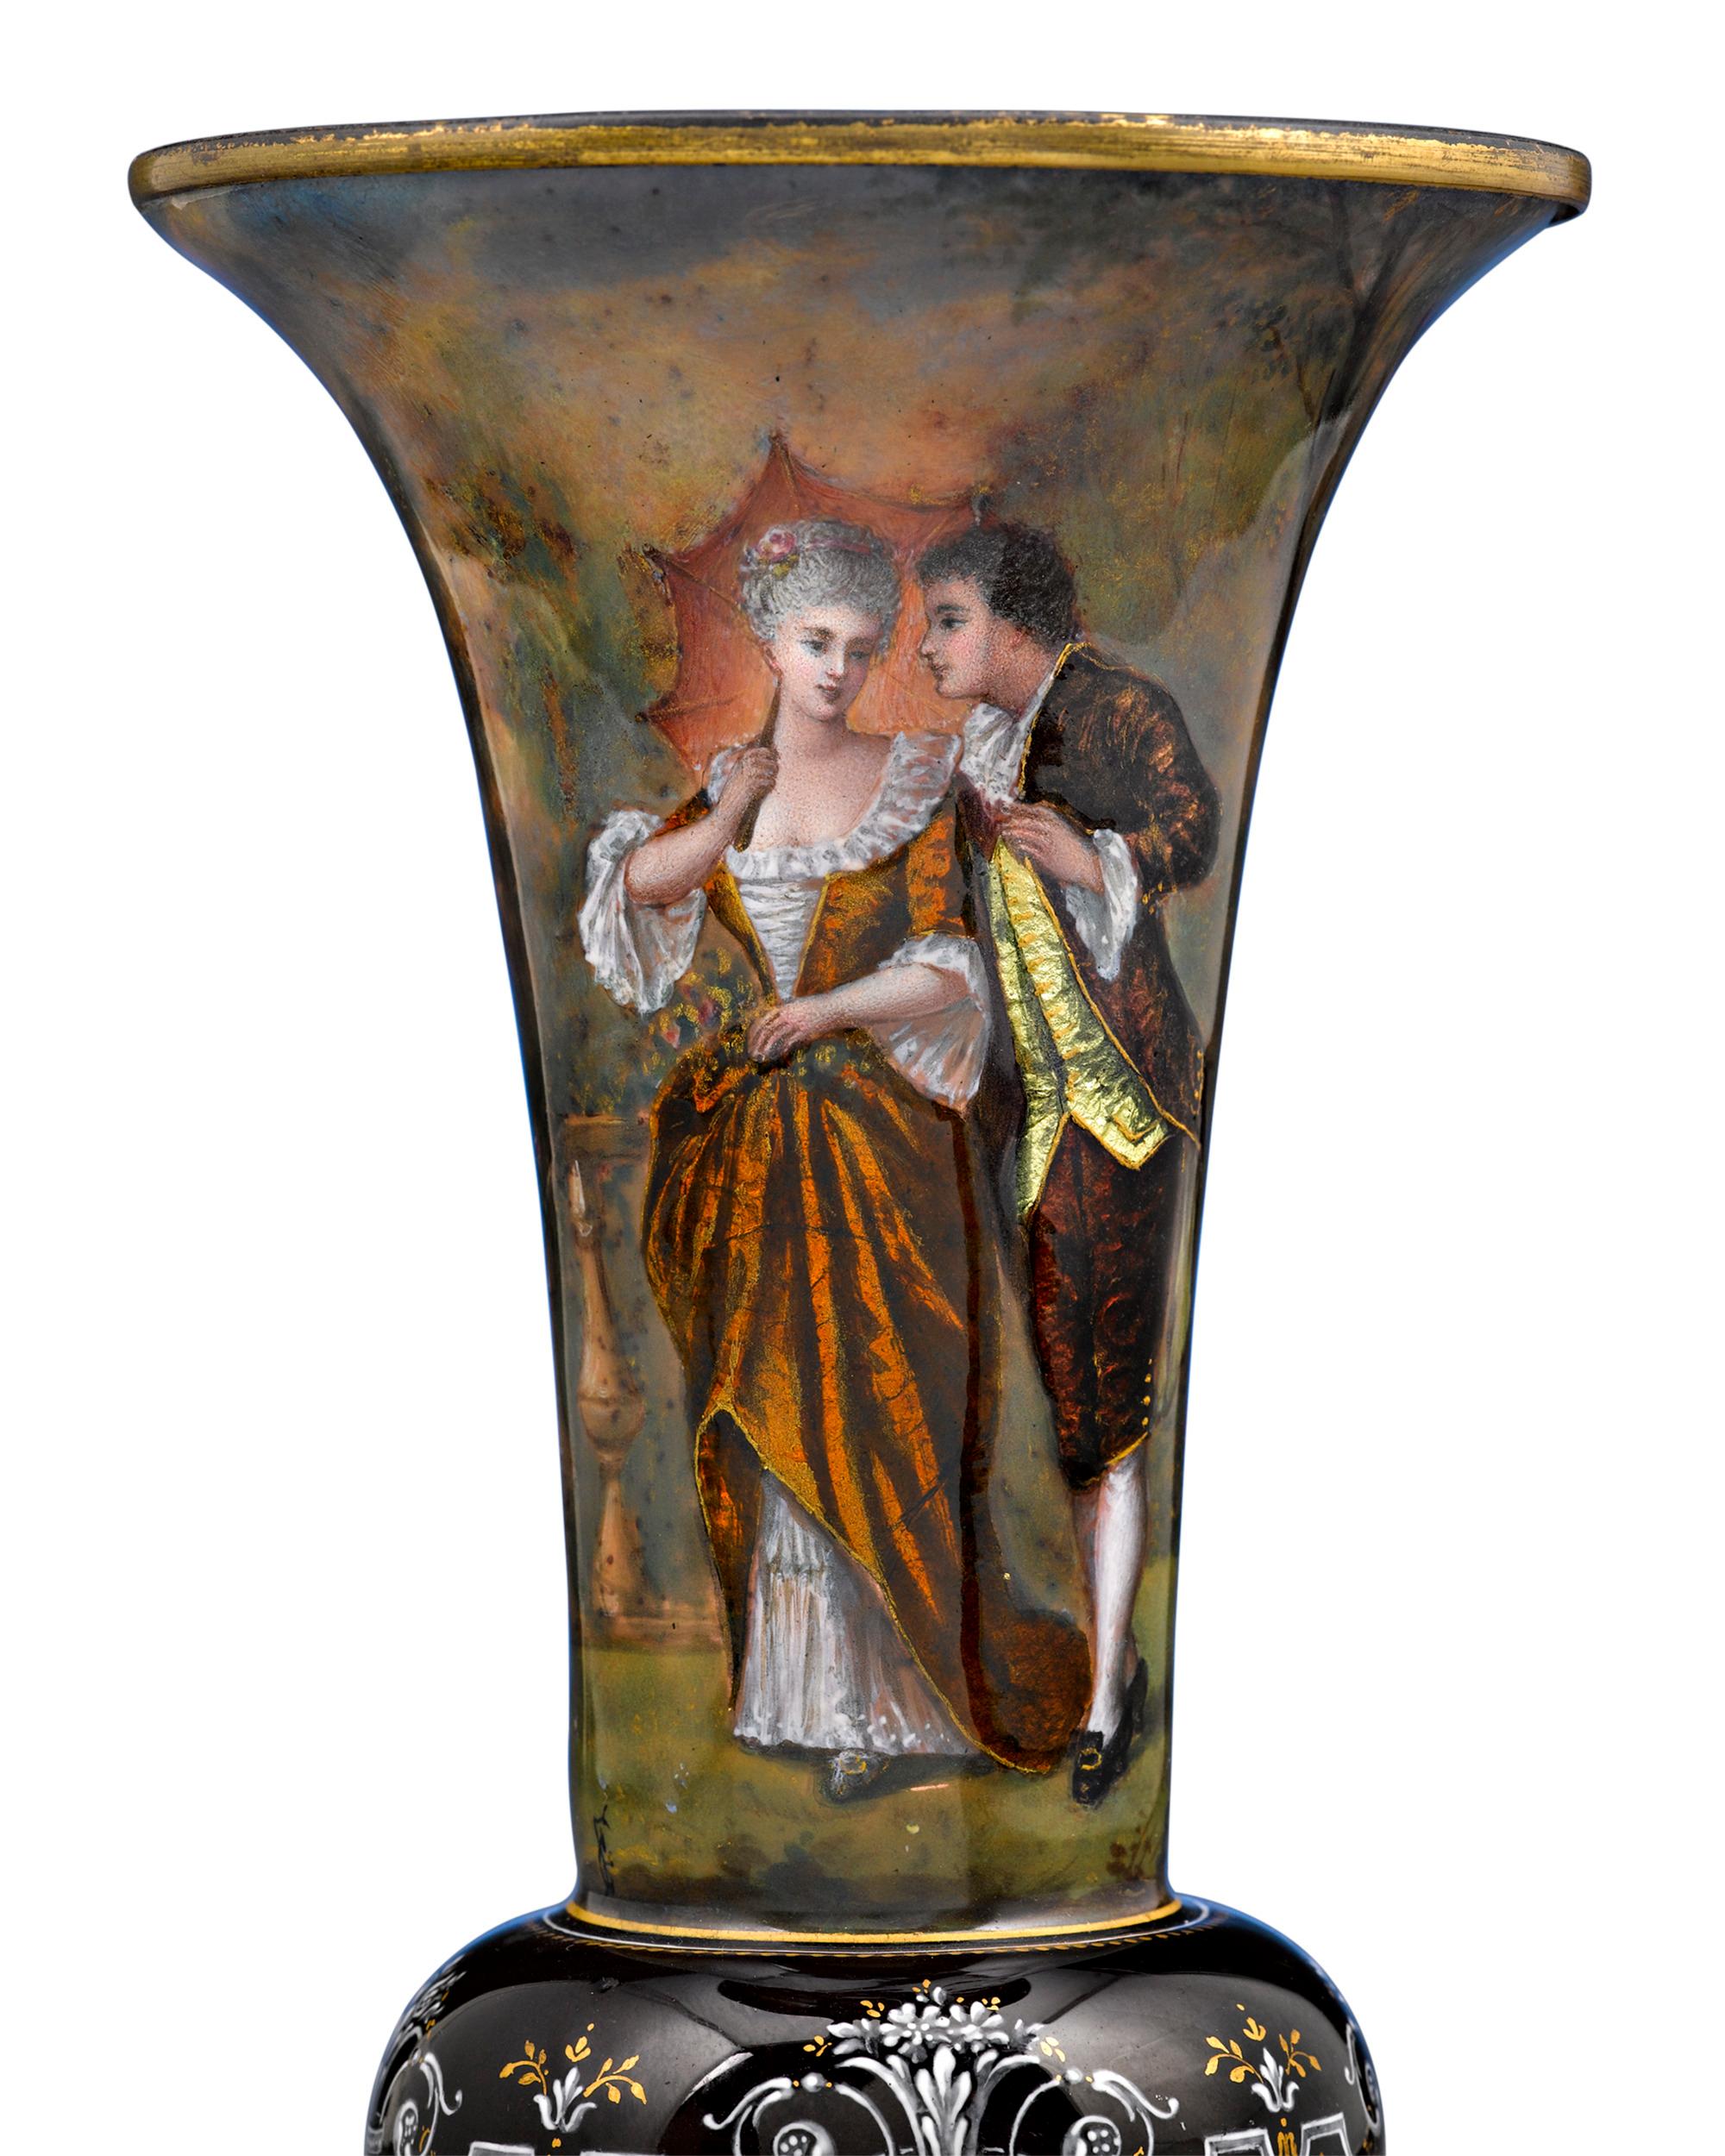 Une magnifique paire de vases en émail de Limoges représentant des scènes romantiques d'amoureux du XVIIIe siècle dans des robes aux couleurs vives. Il est particulièrement rare de trouver des paires de ces merveilleux vases dans un état aussi